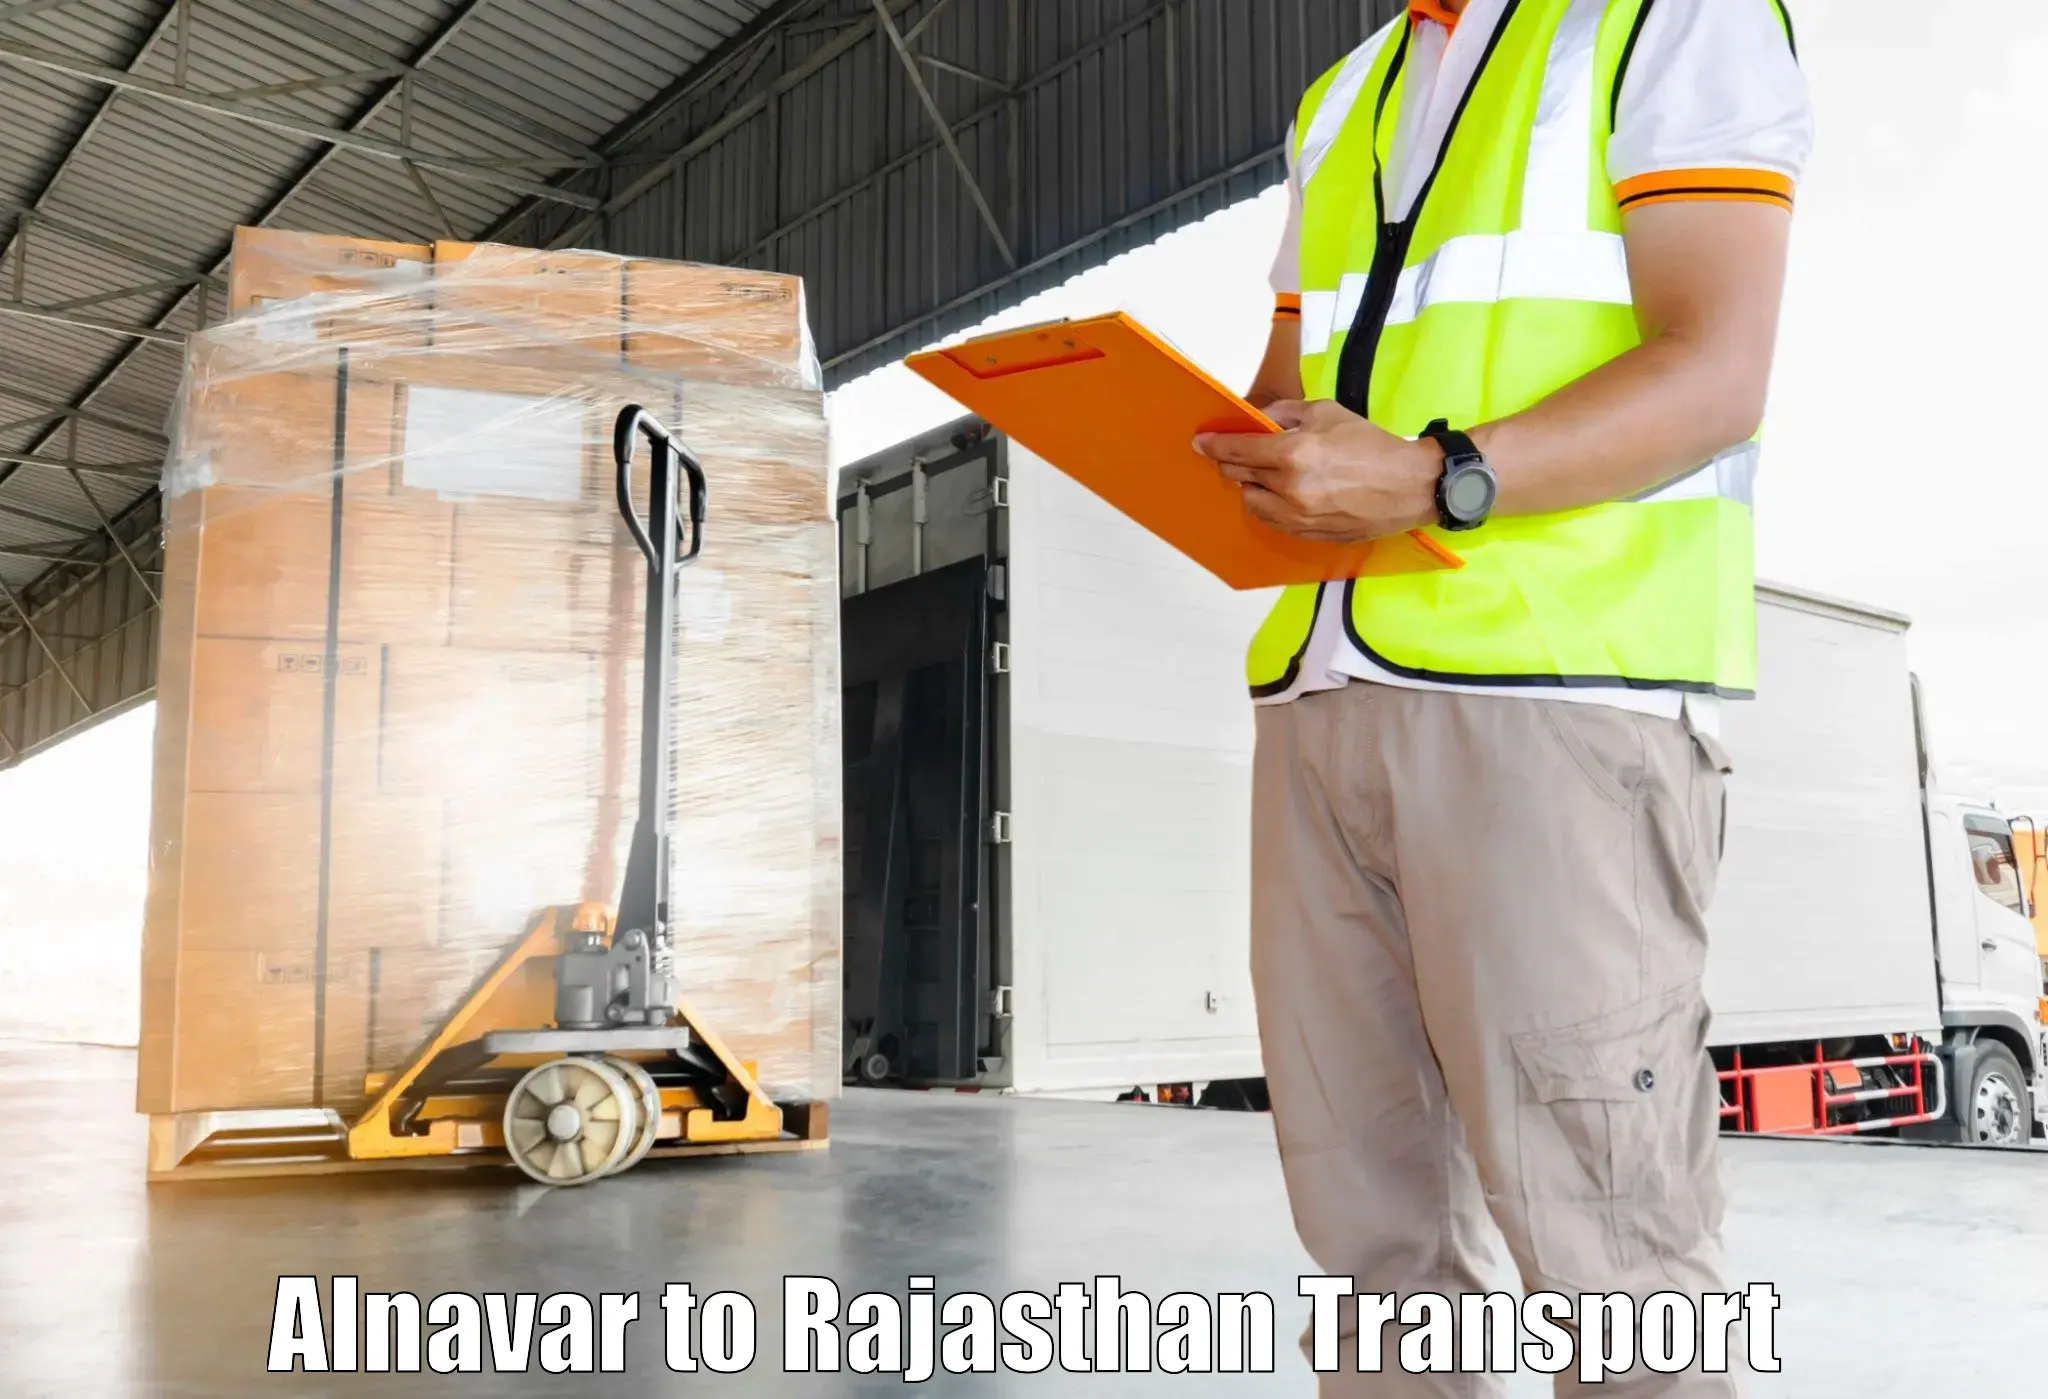 Delivery service Alnavar to Morkheri